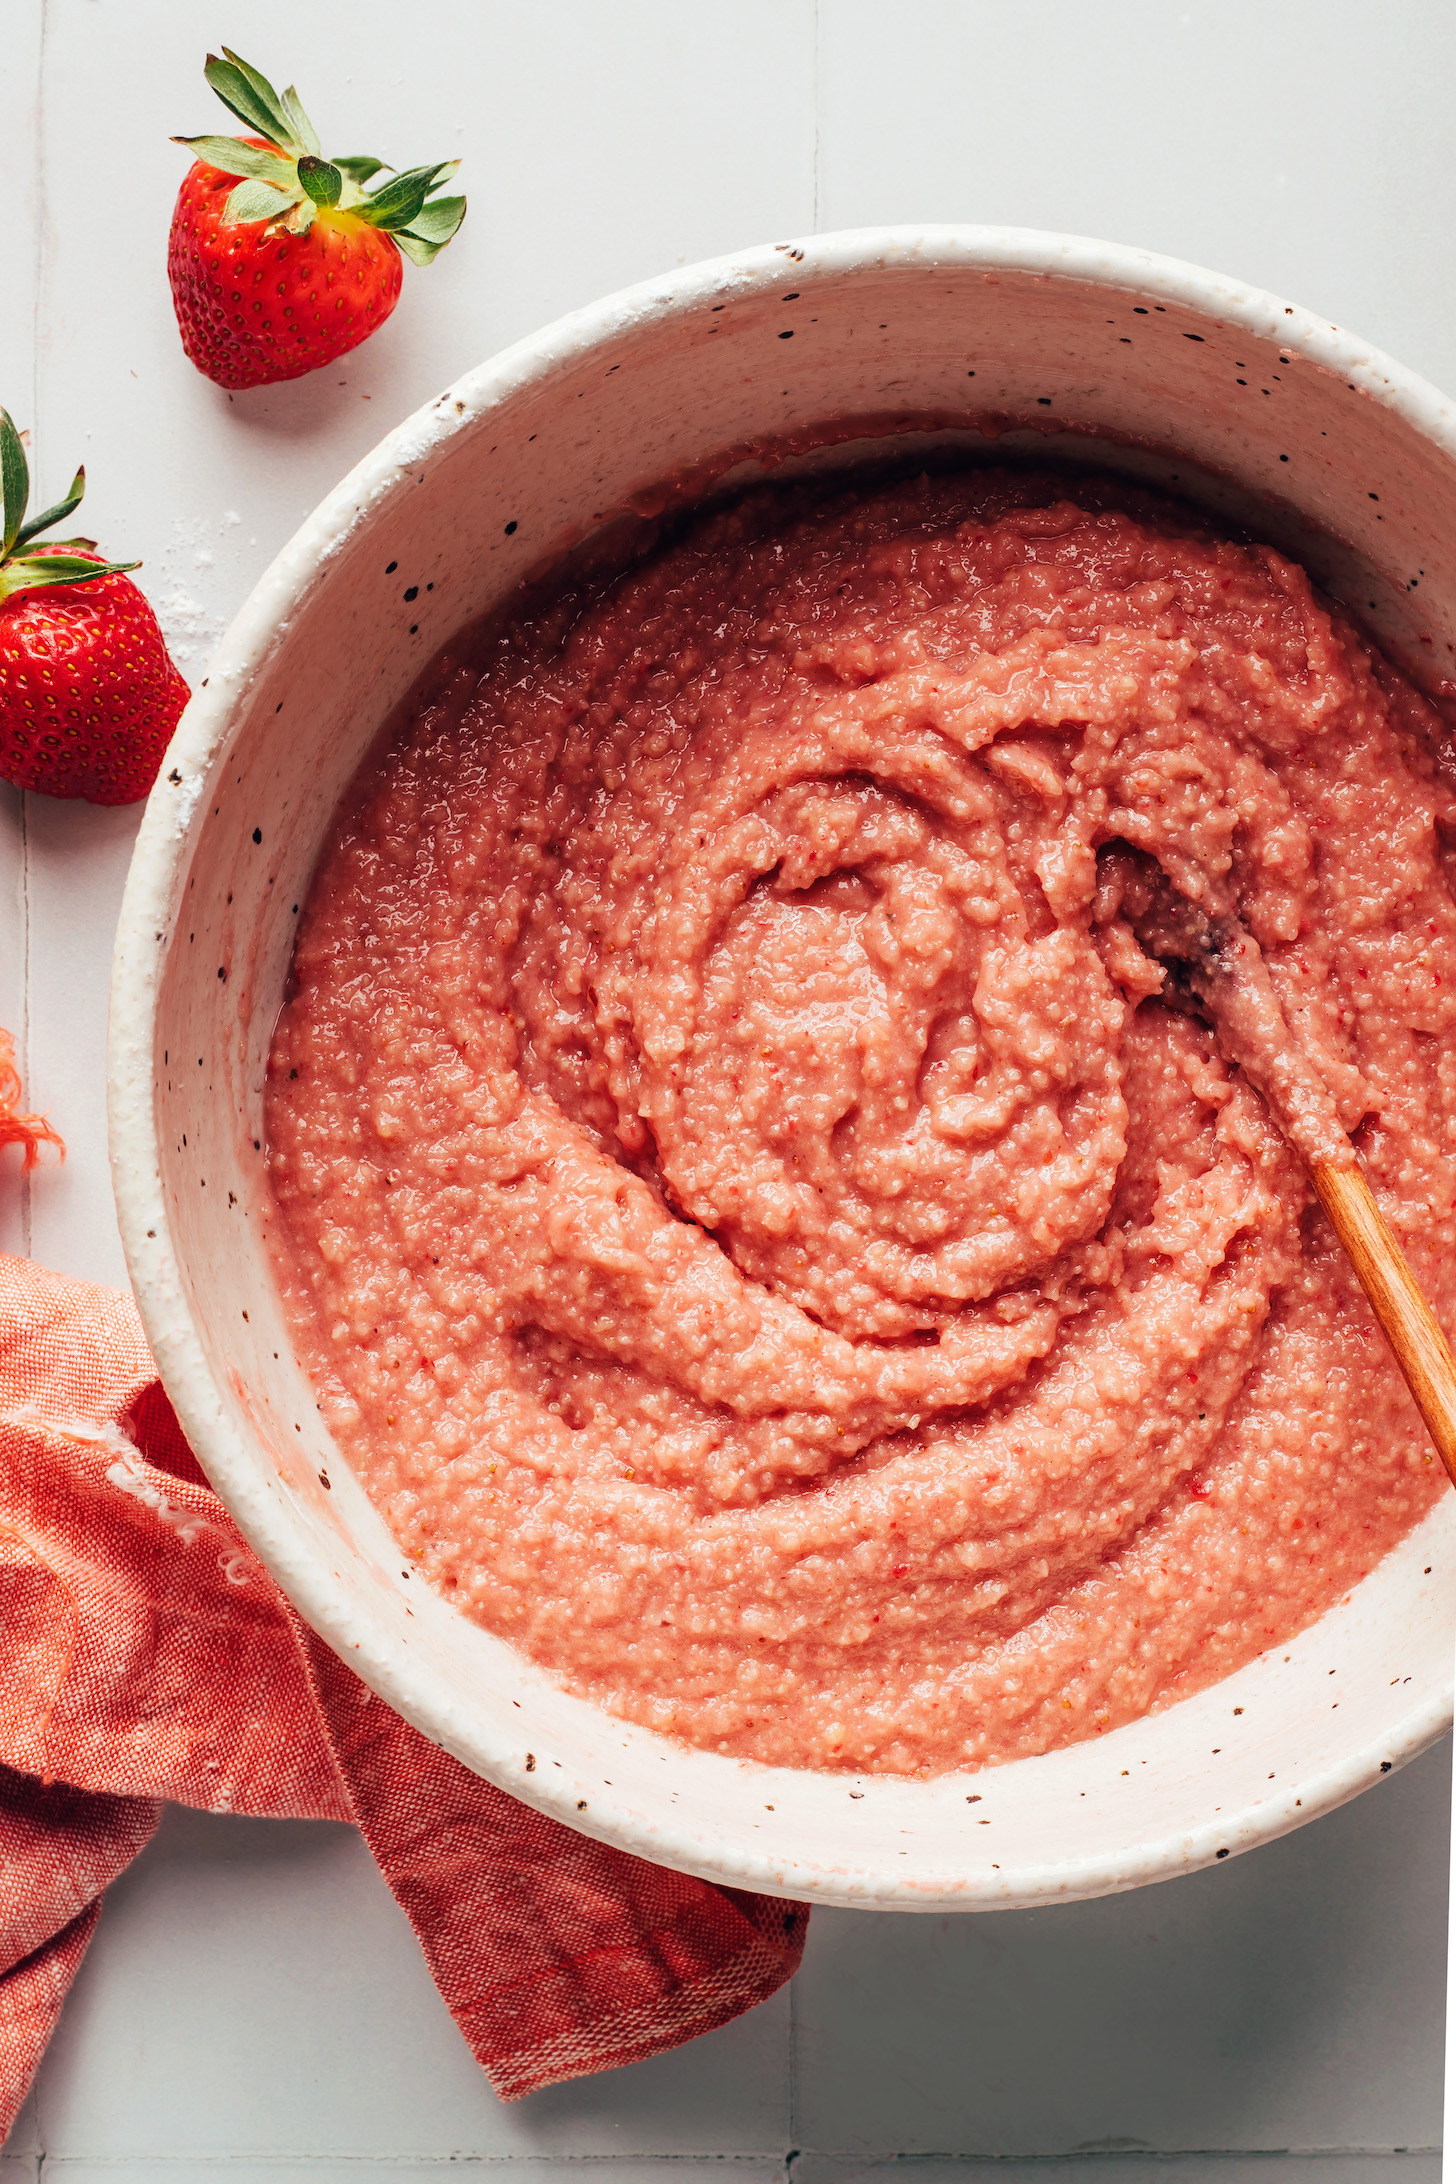 Bowl of vegan gluten-free strawberry donut batter